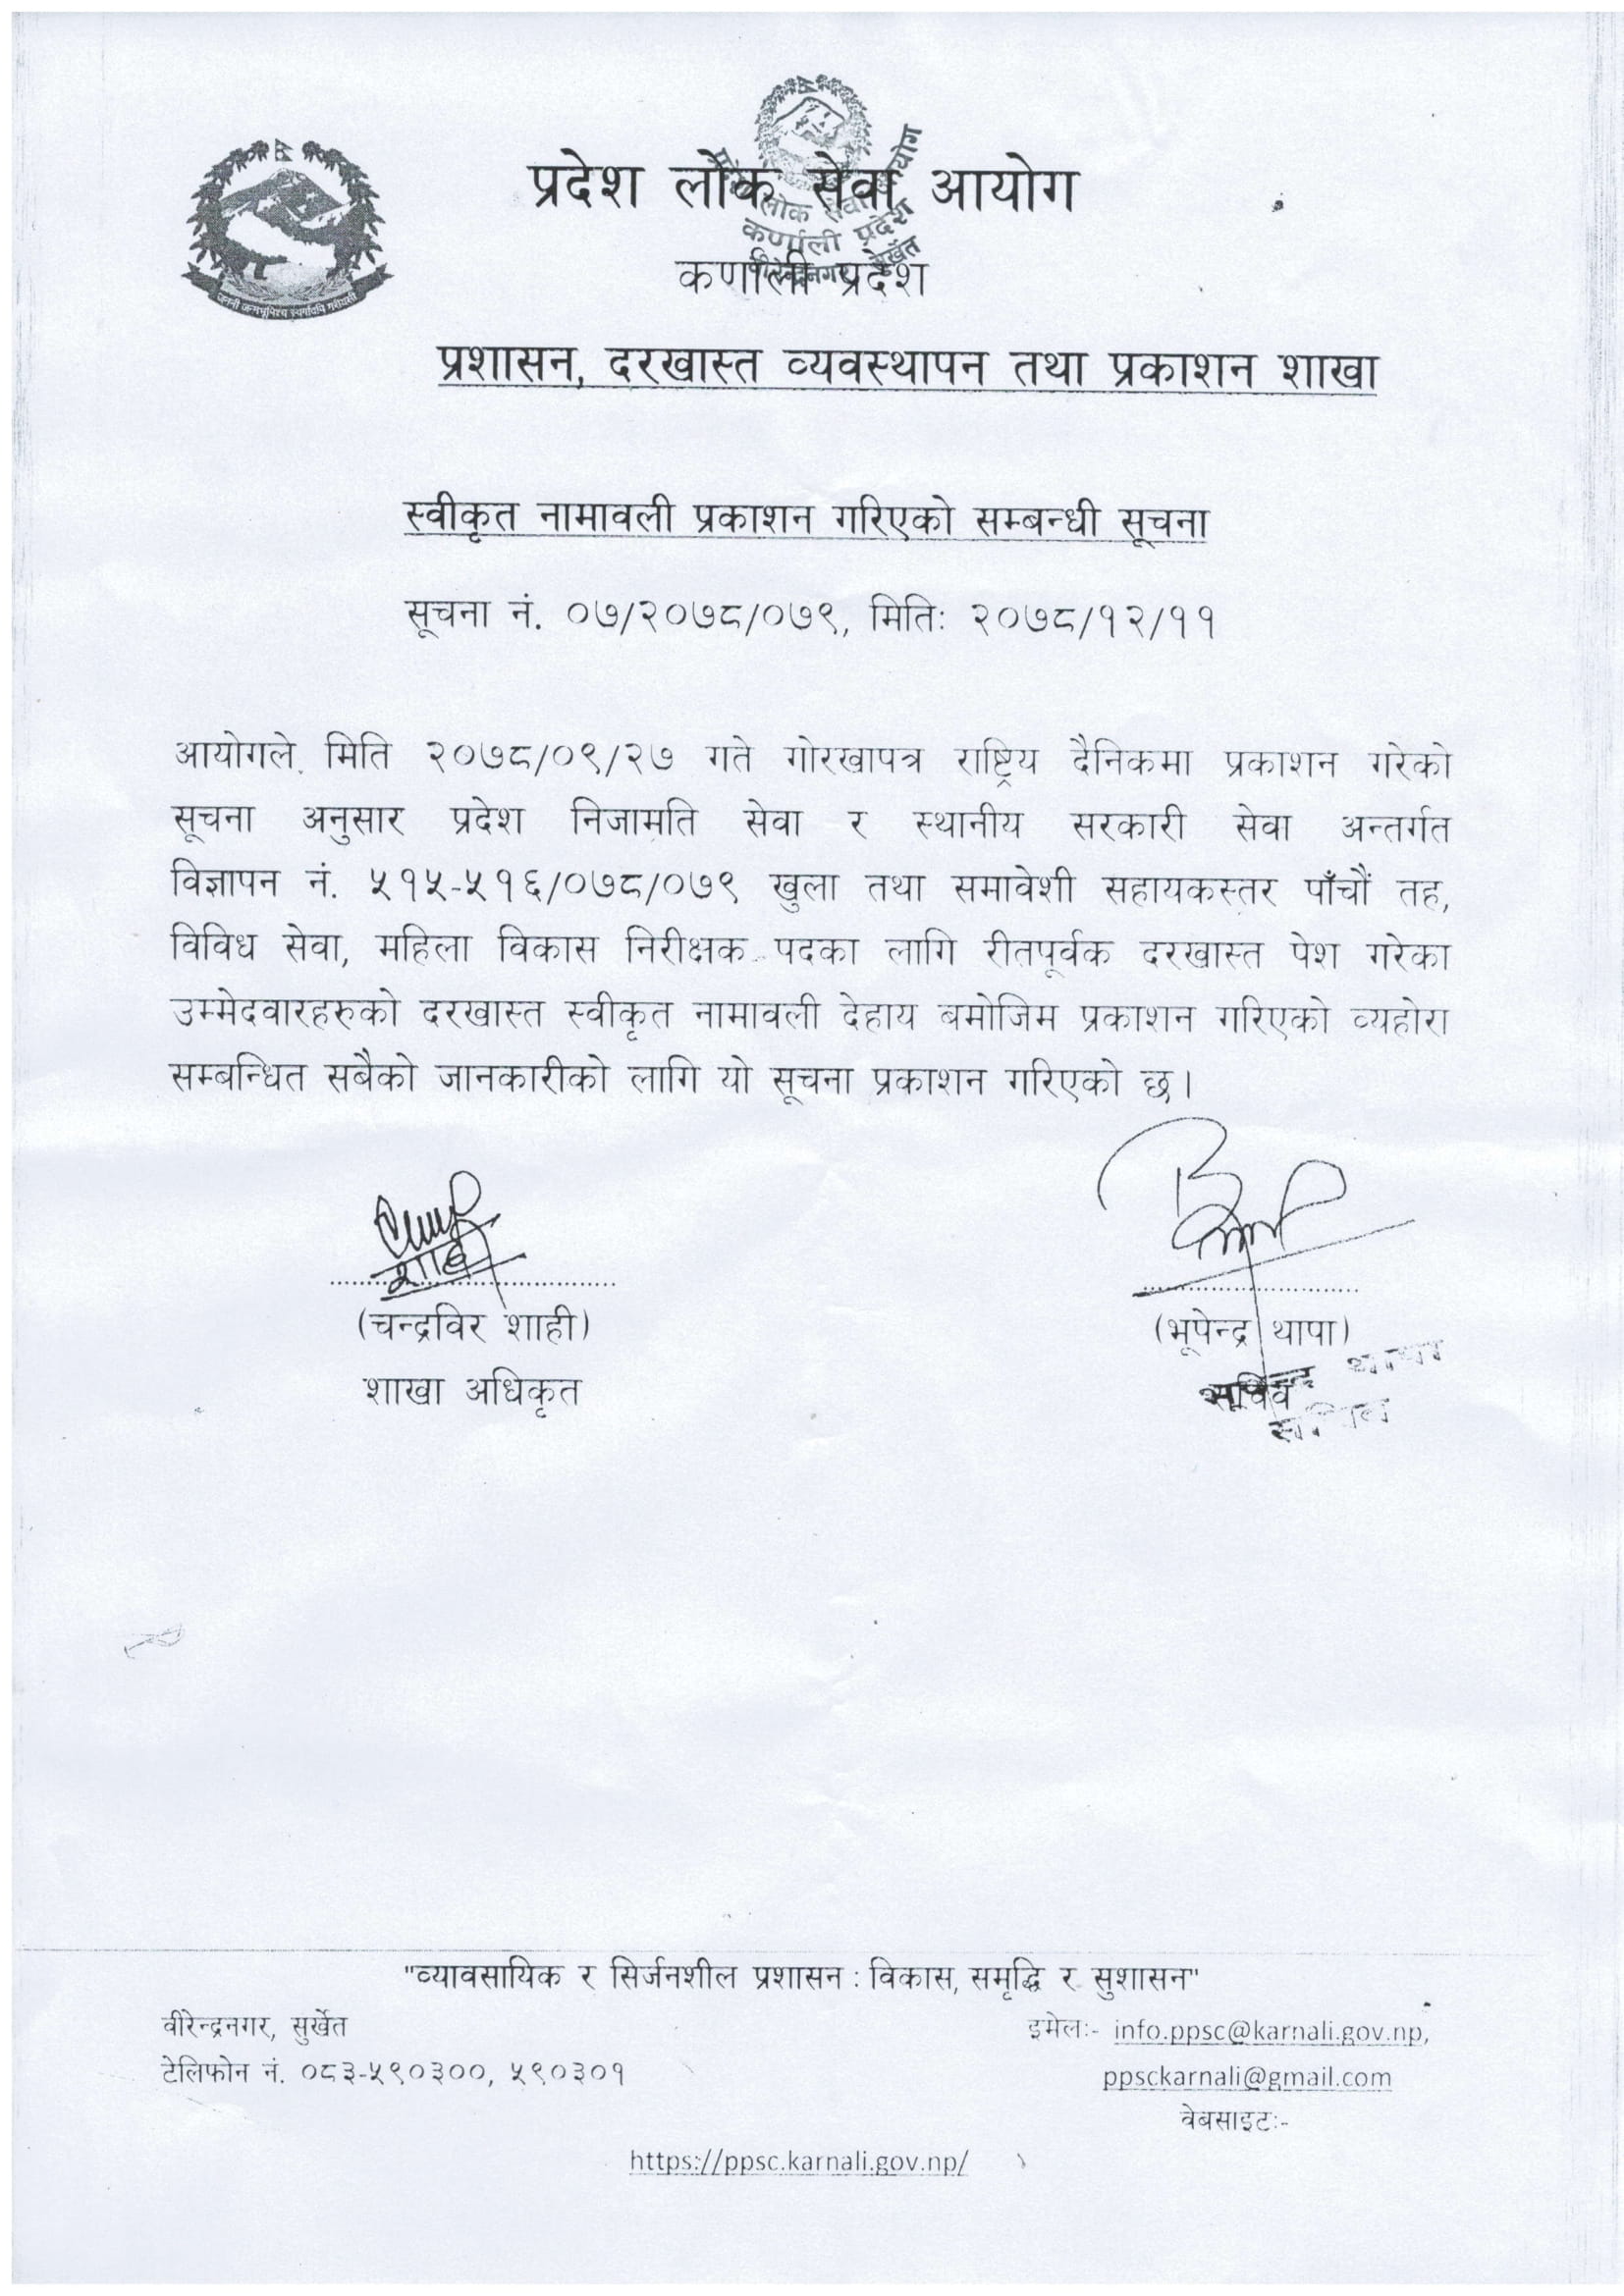 Karnali Pradesh Lok Sewa Mahila Bikash Nirikshak Approved Namelist